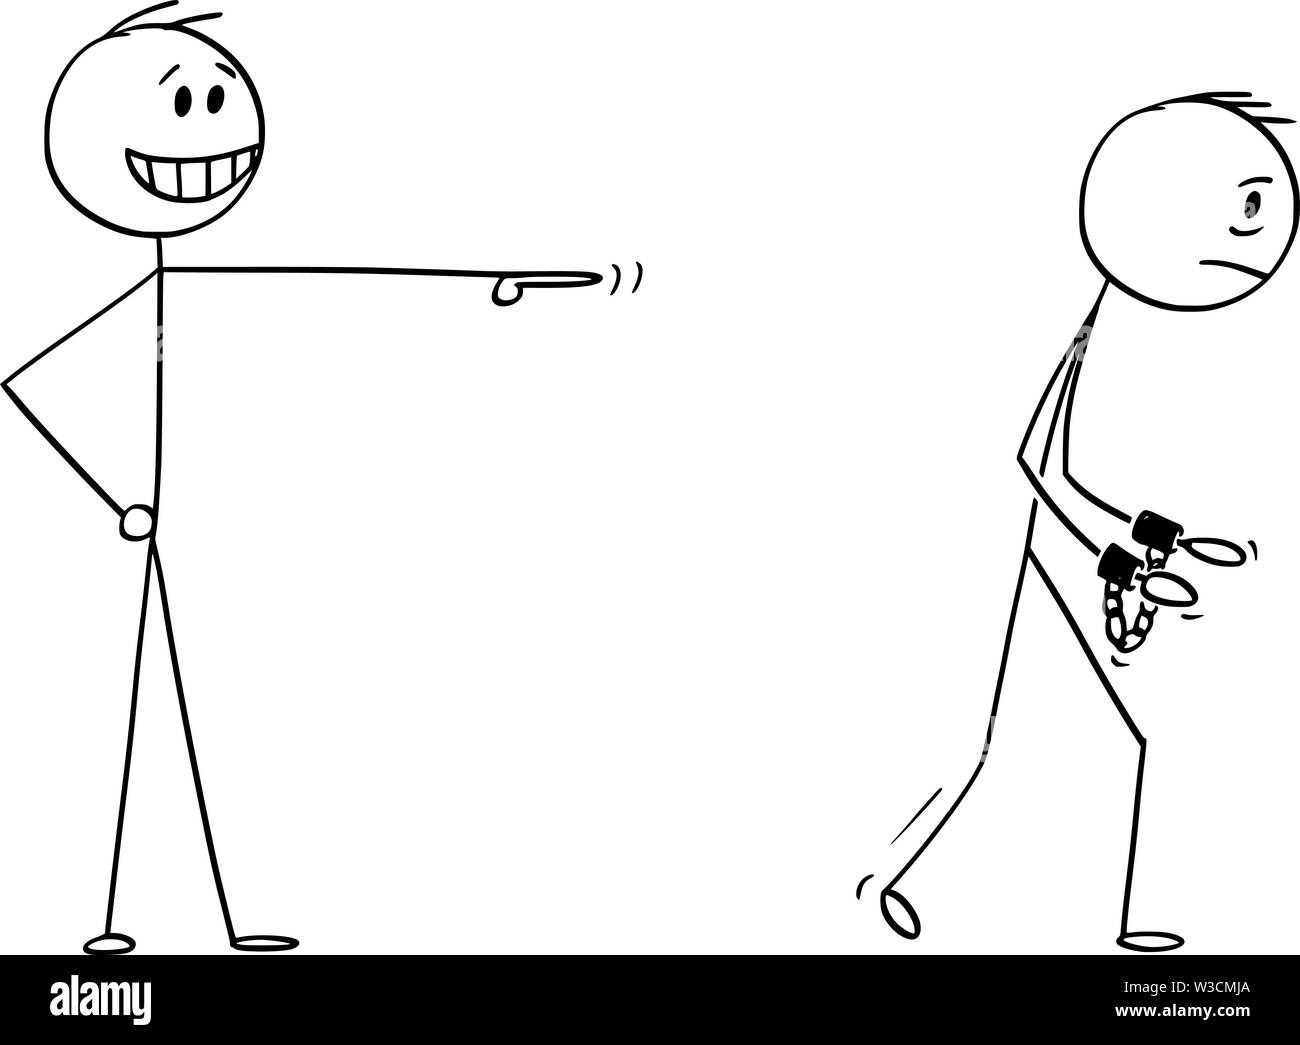 Vektor cartoon Strichmännchen Zeichnen konzeptionelle Darstellung der Geschäftsmann, ein verspotten oder lächerlich machen Mann ins Gefängnis mit Fesseln oder Handschellen an Händen zu gehen. Stock Vektor